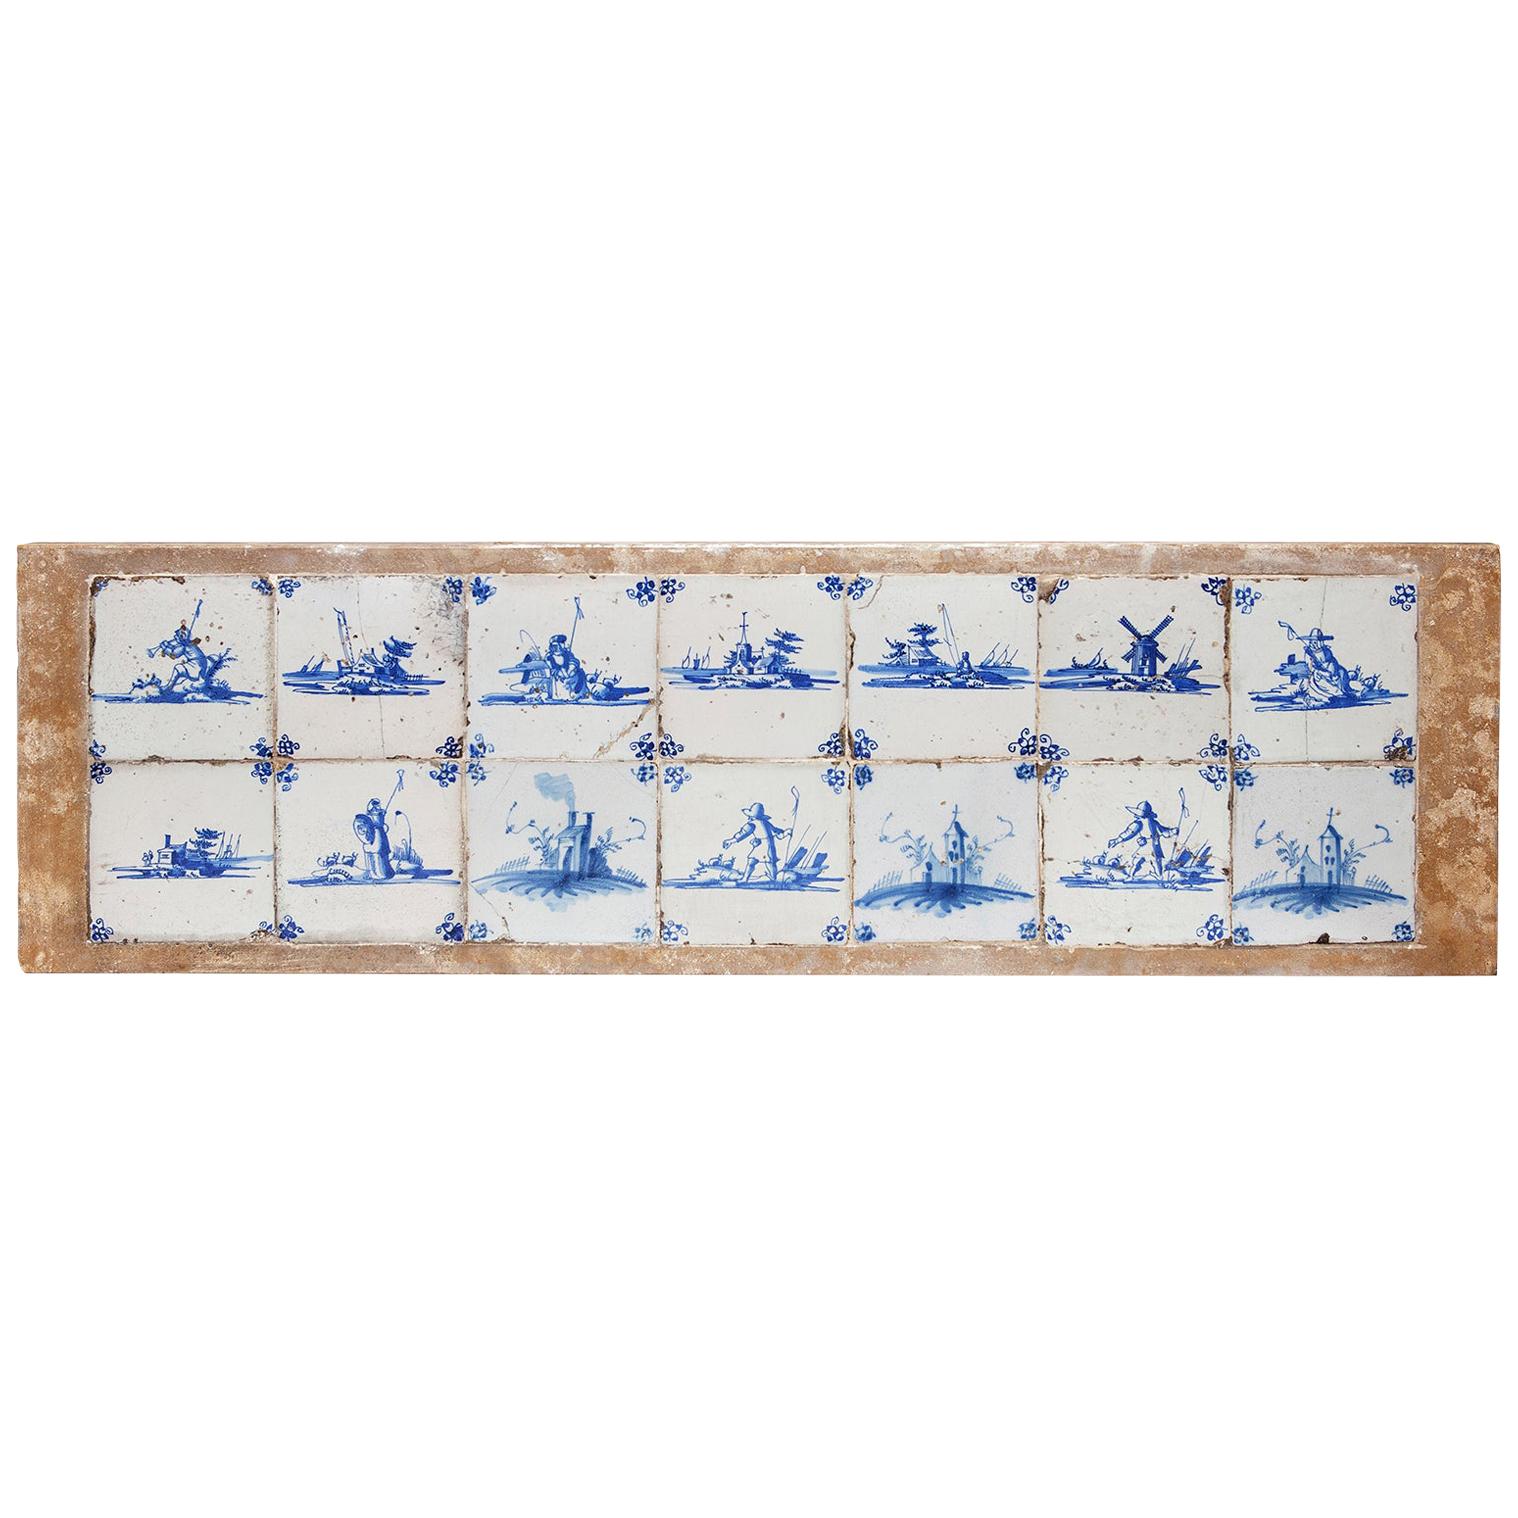 14 Delftware Tiles Plaque Blue & White Dutch Estuary Landscape Skiffs Windmills